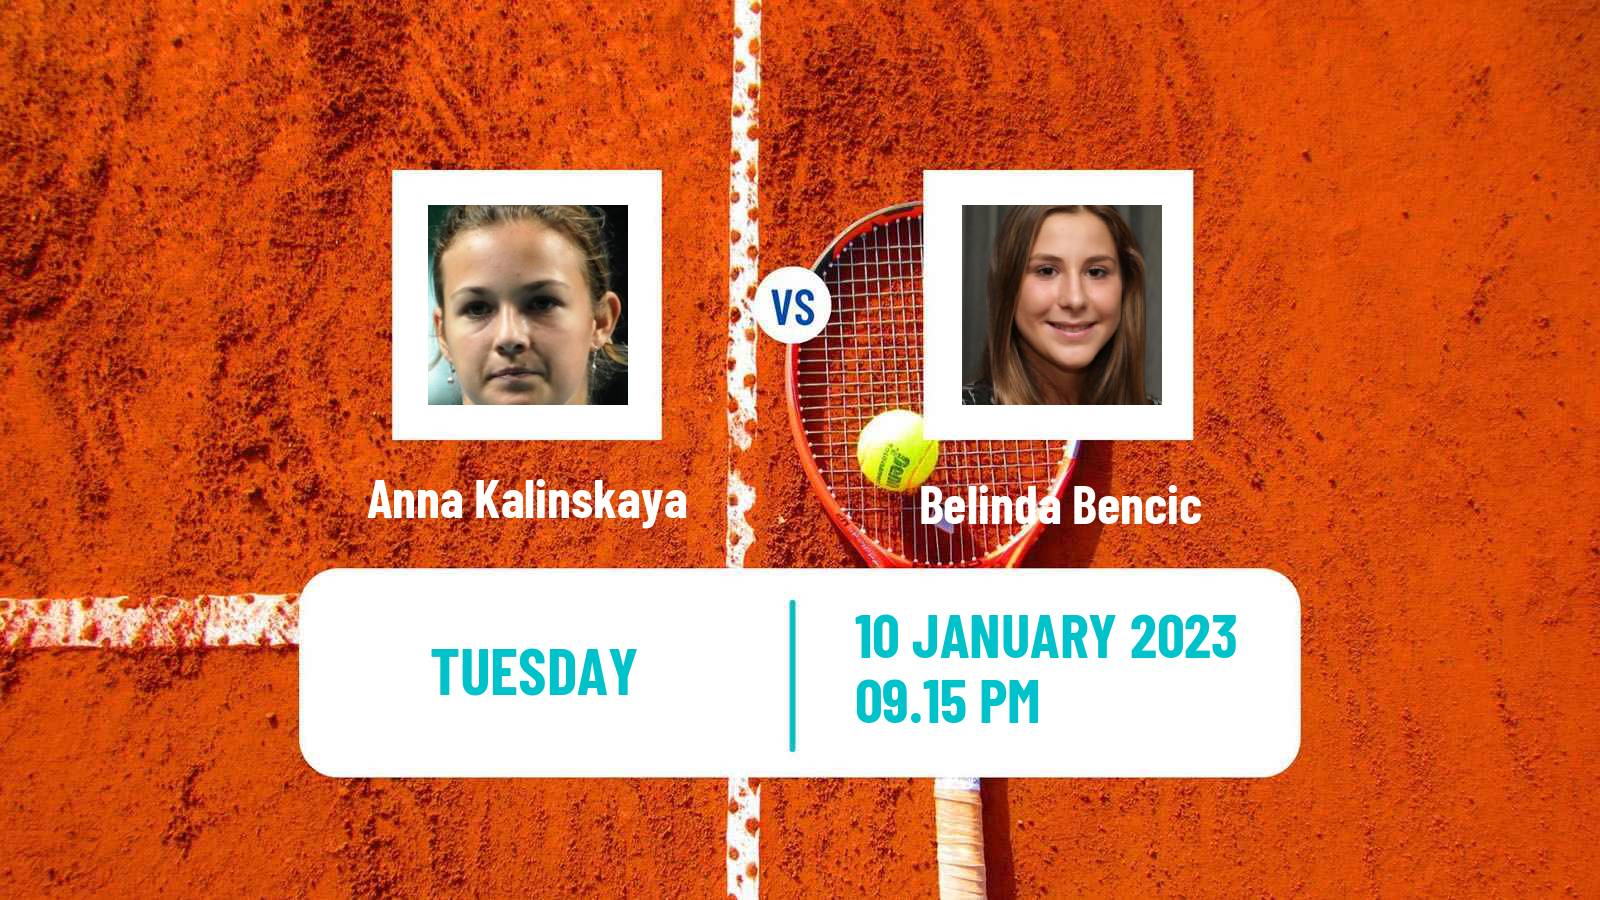 Tennis WTA Adelaide 2 Anna Kalinskaya - Belinda Bencic